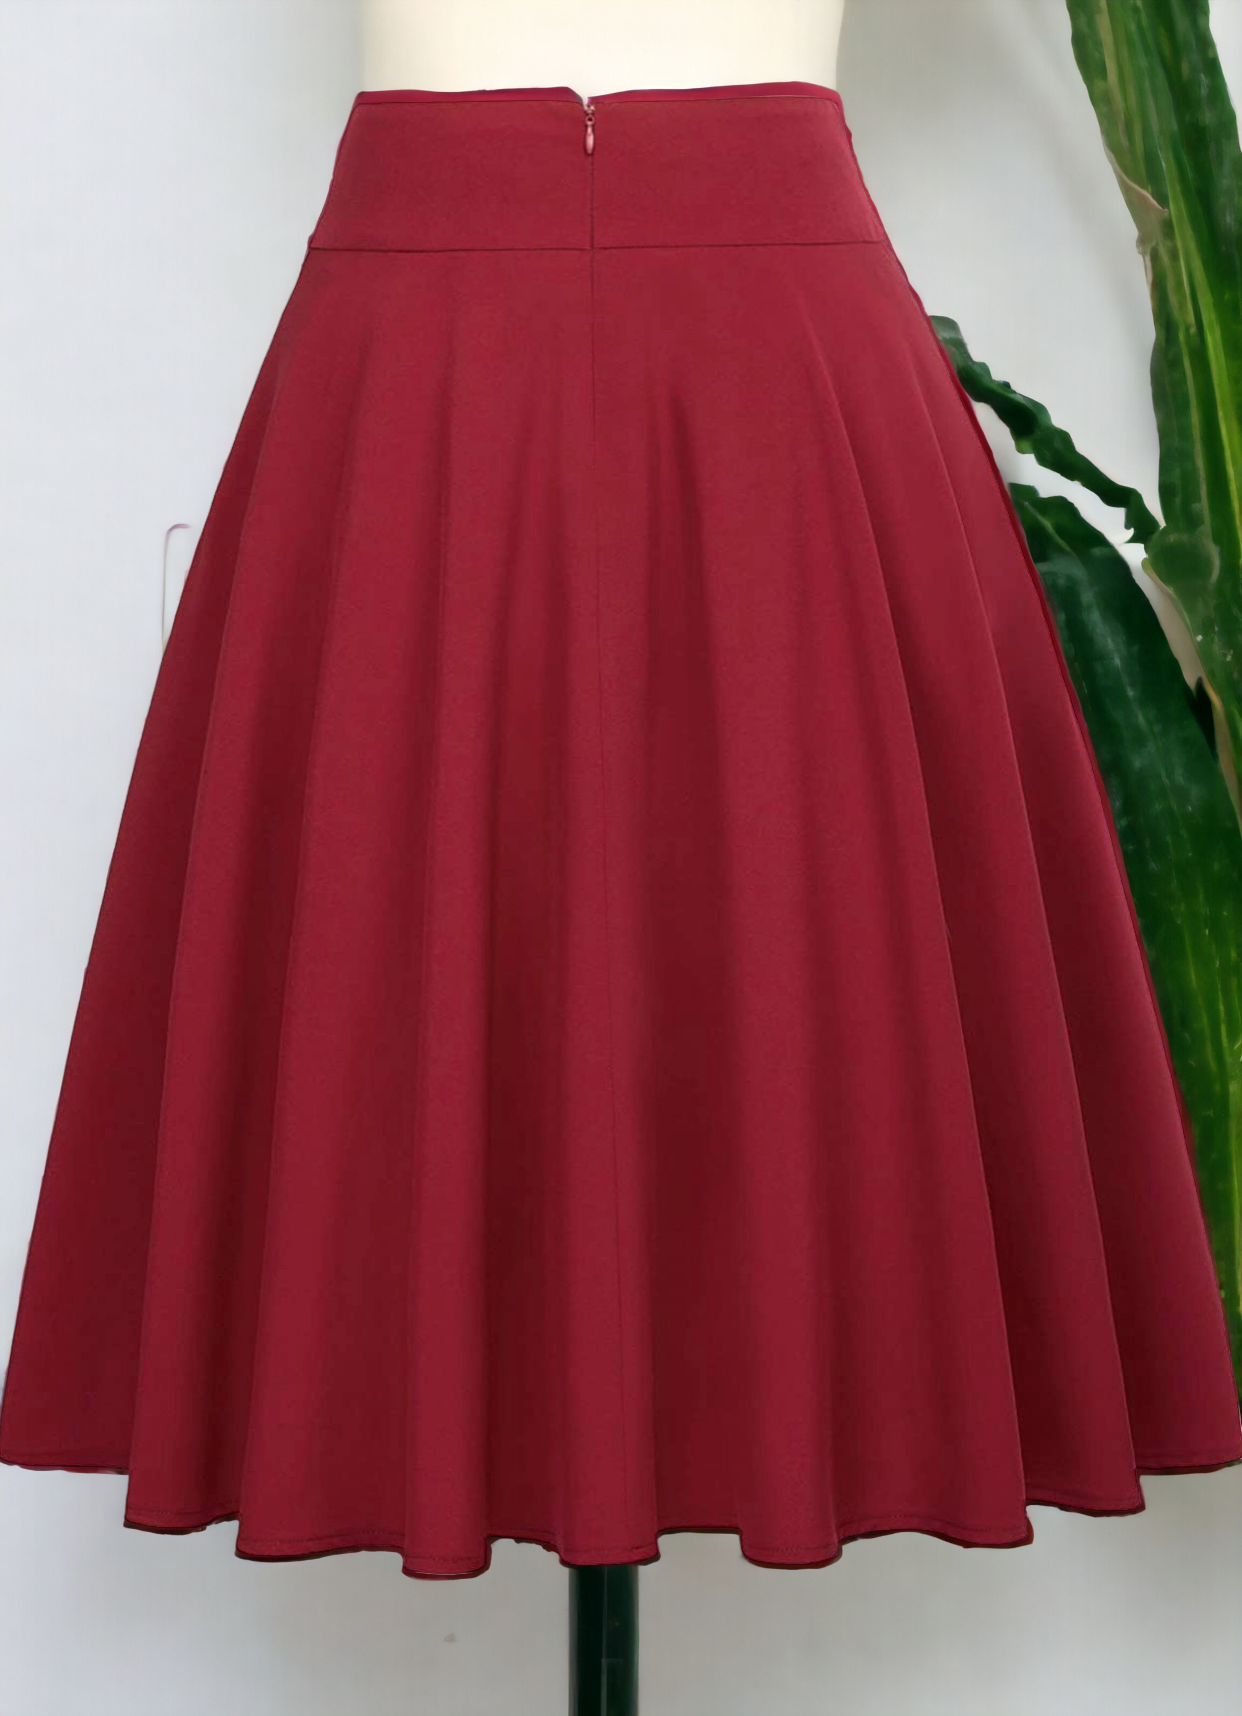 High Waist A-Line Skirt, Size Medium - NEW